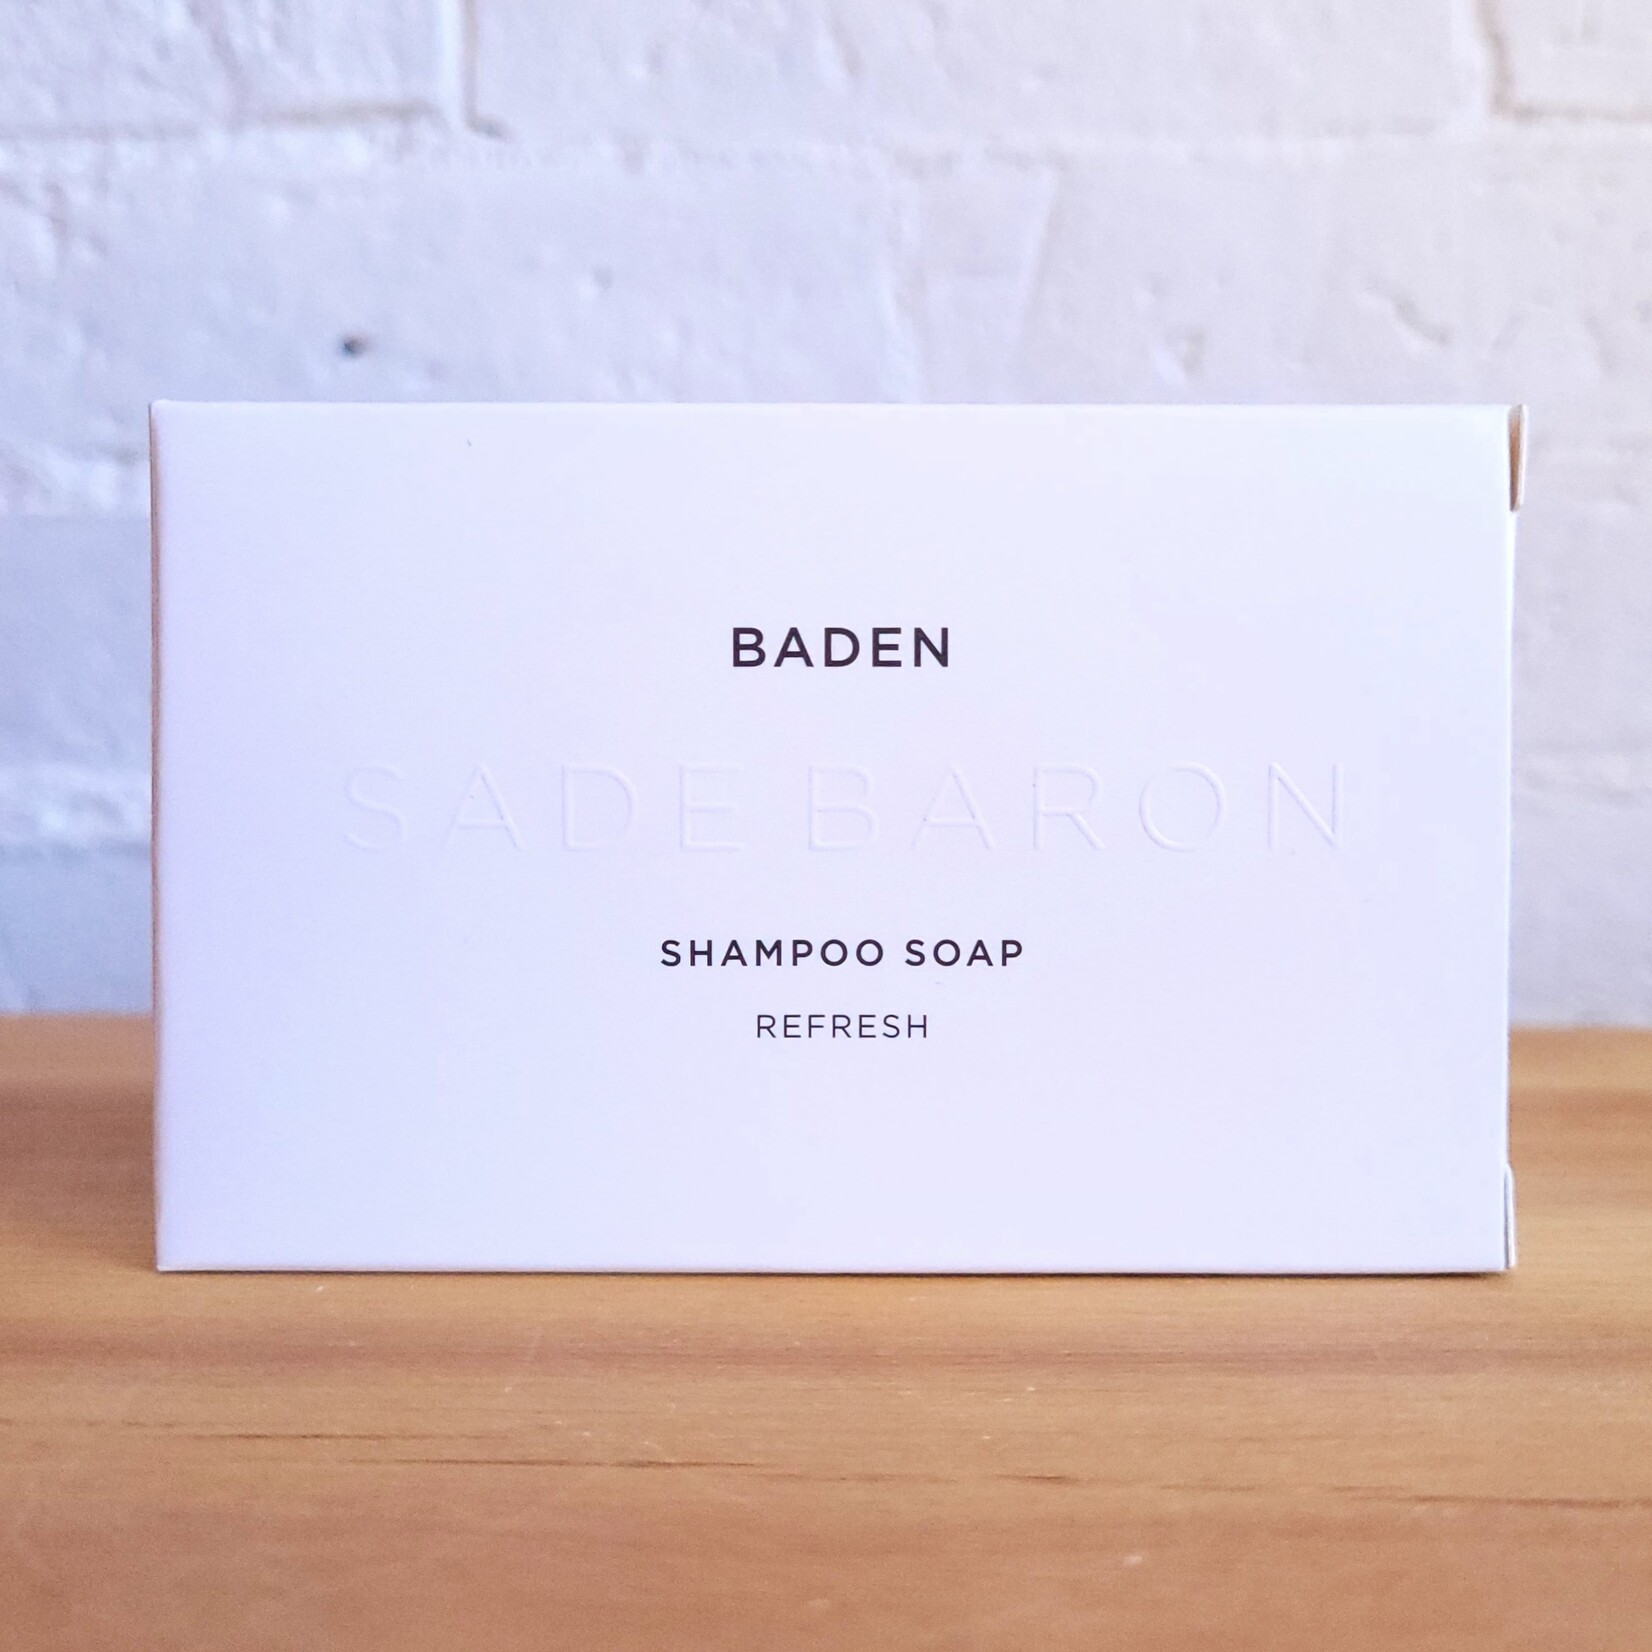 Sade Baron Sade Baron: Shampoo Soap - Baden